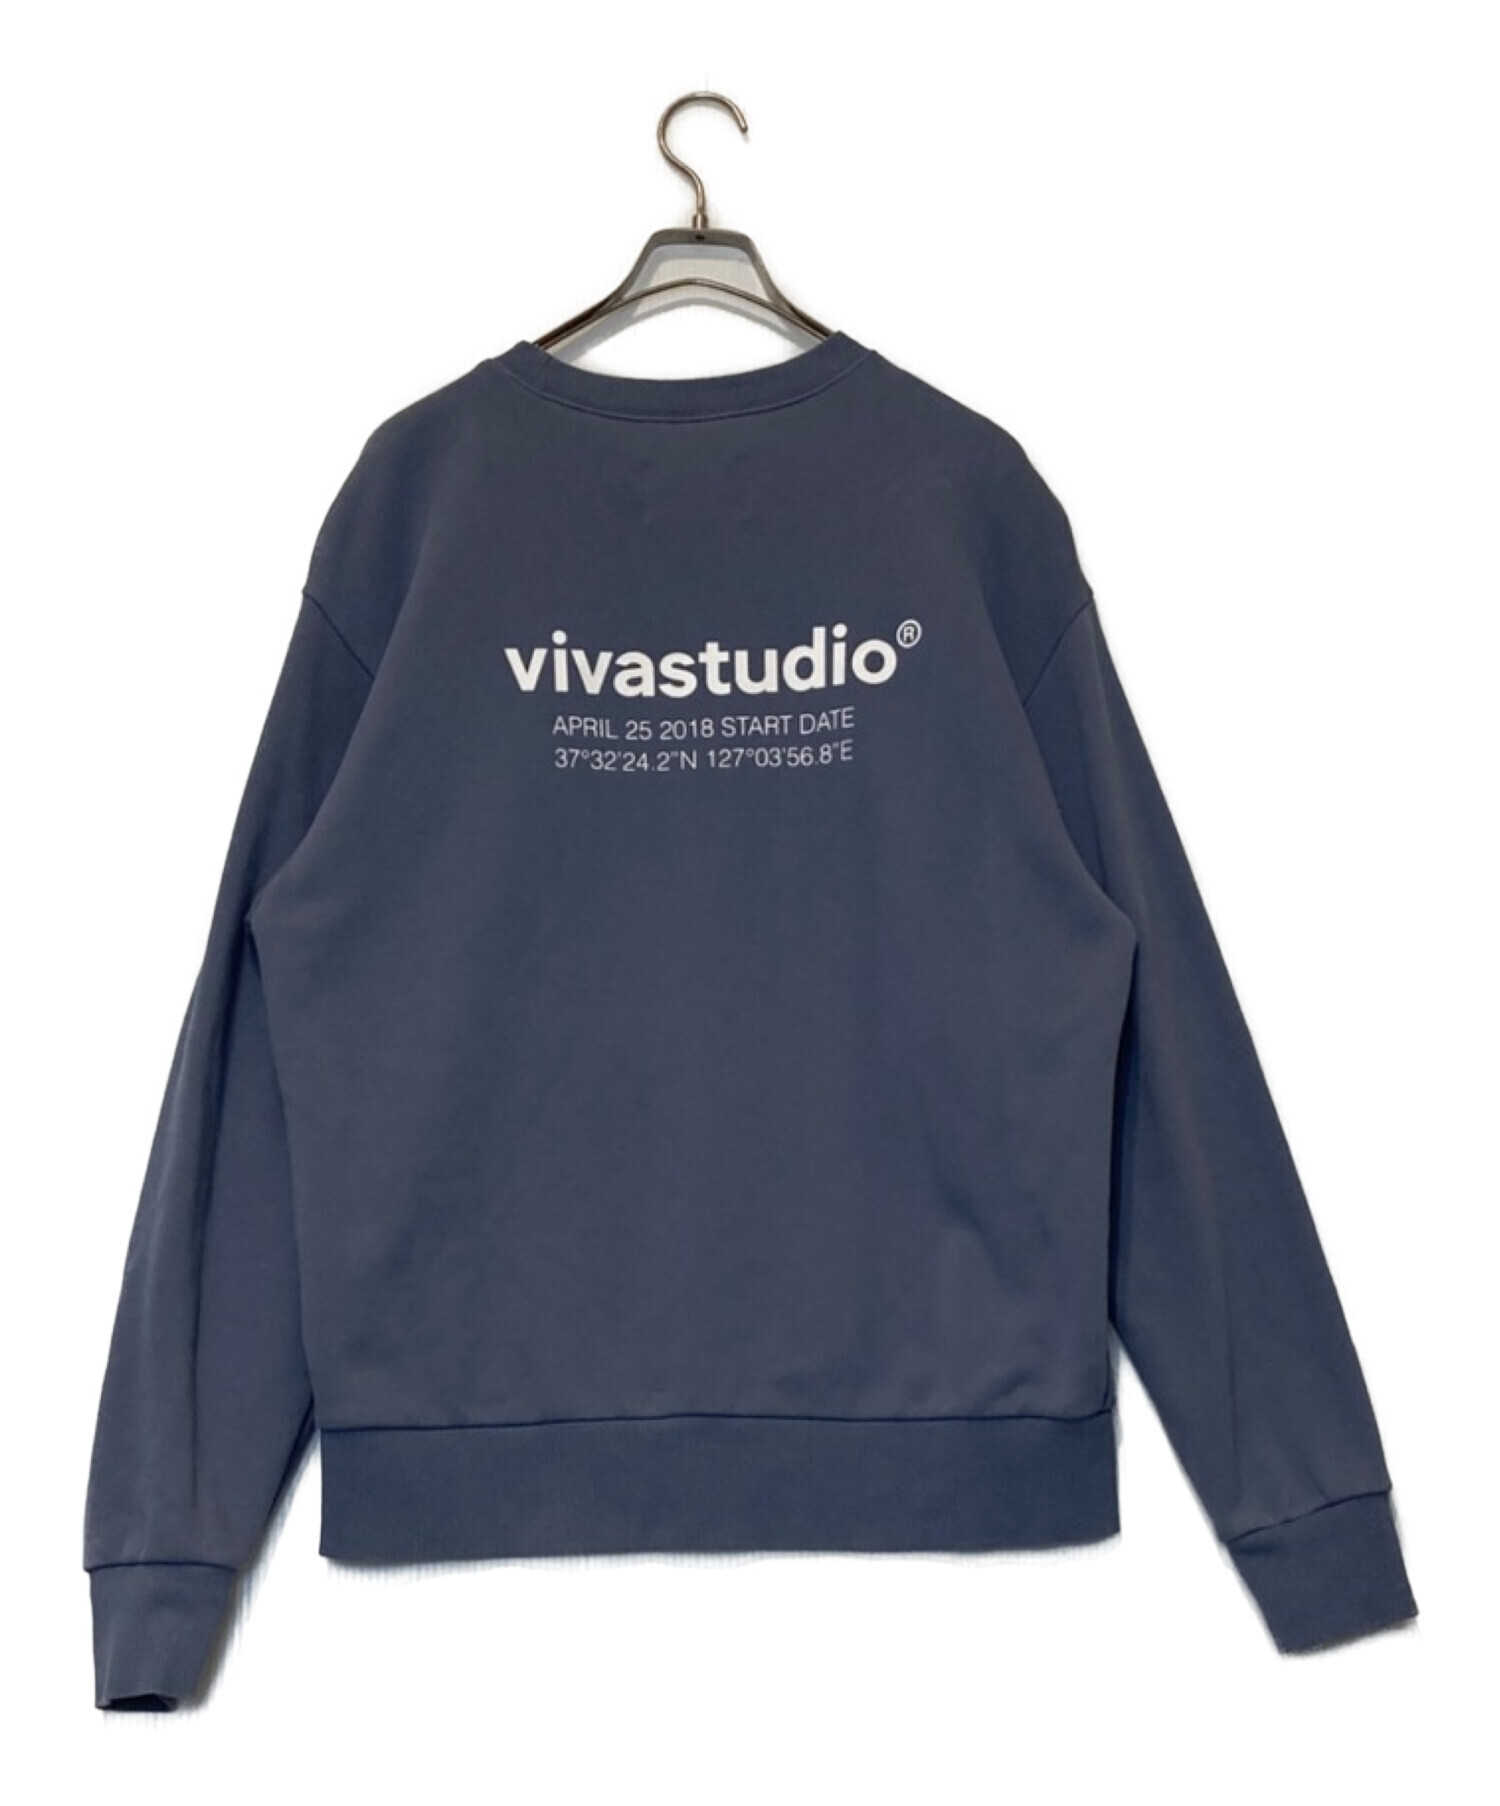 vivastudio (ビバスタジオ) LOCATION LOGO CREWNECK スウェット ブルー サイズ:M